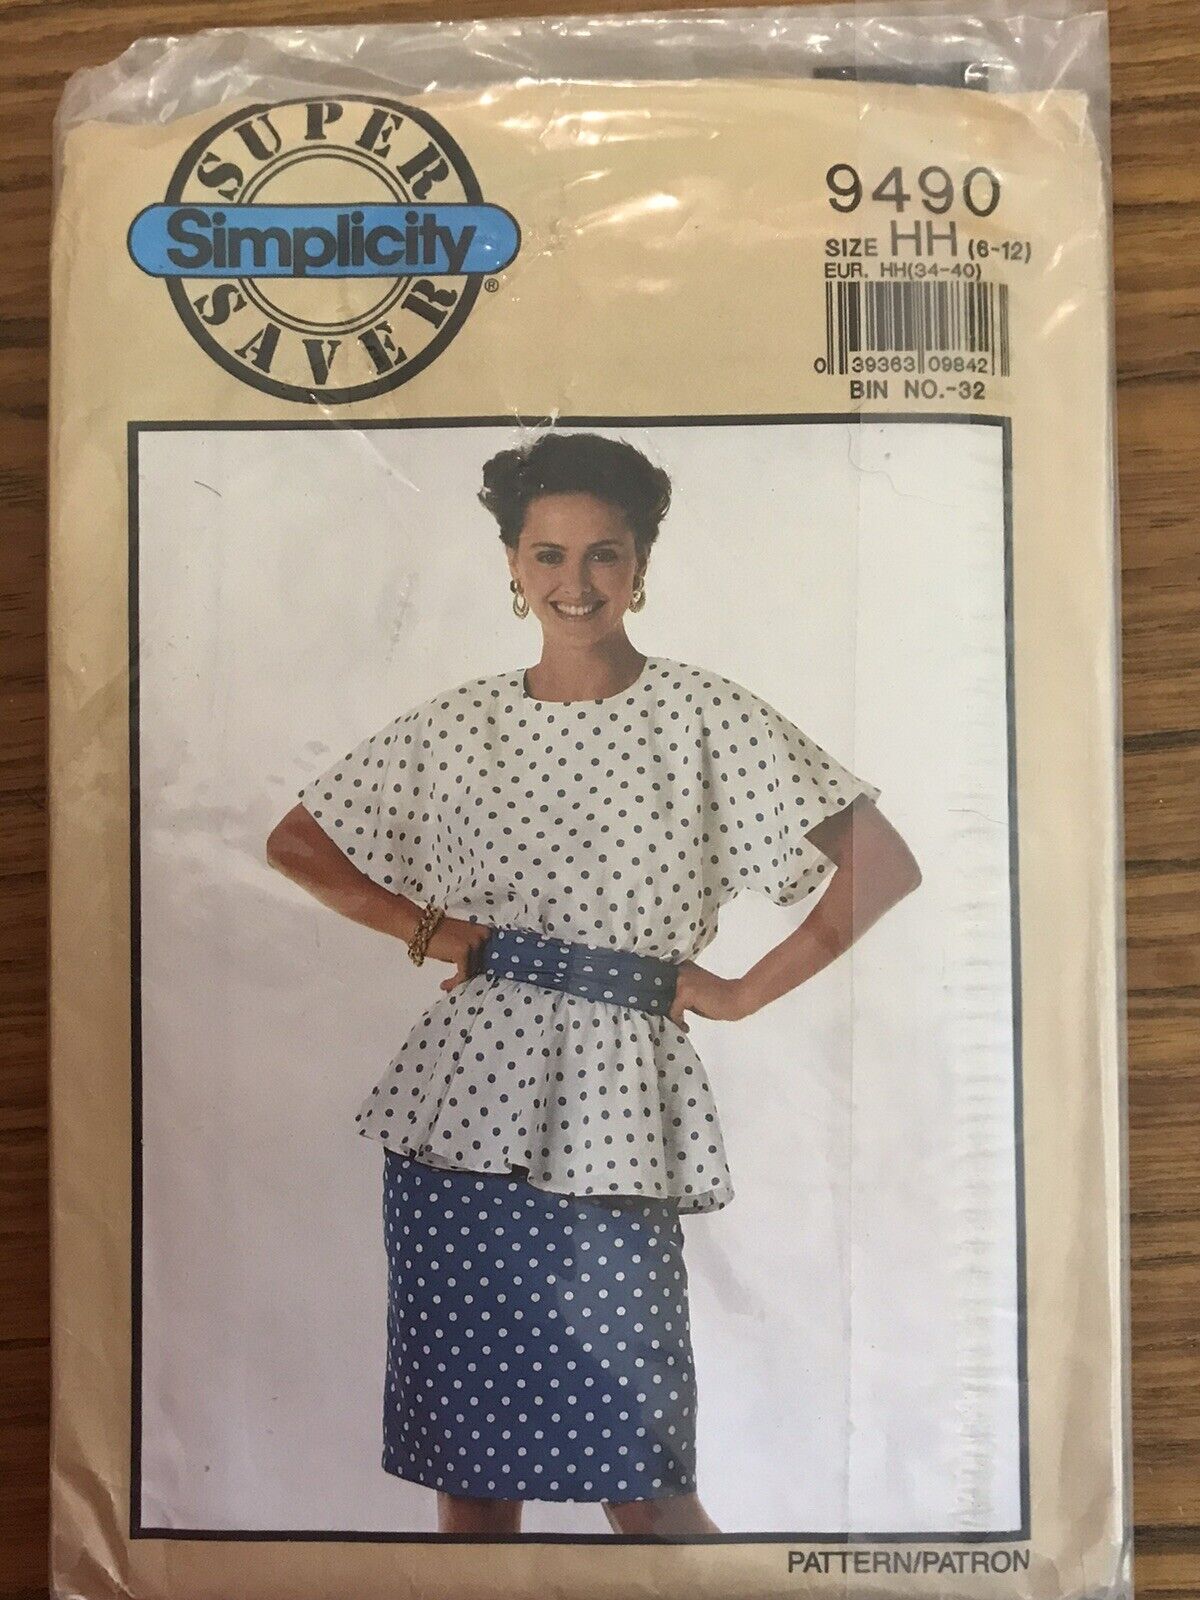 Simplicity 9490 Misses Petite Two Piece Dress Size HH 6-12, 1989